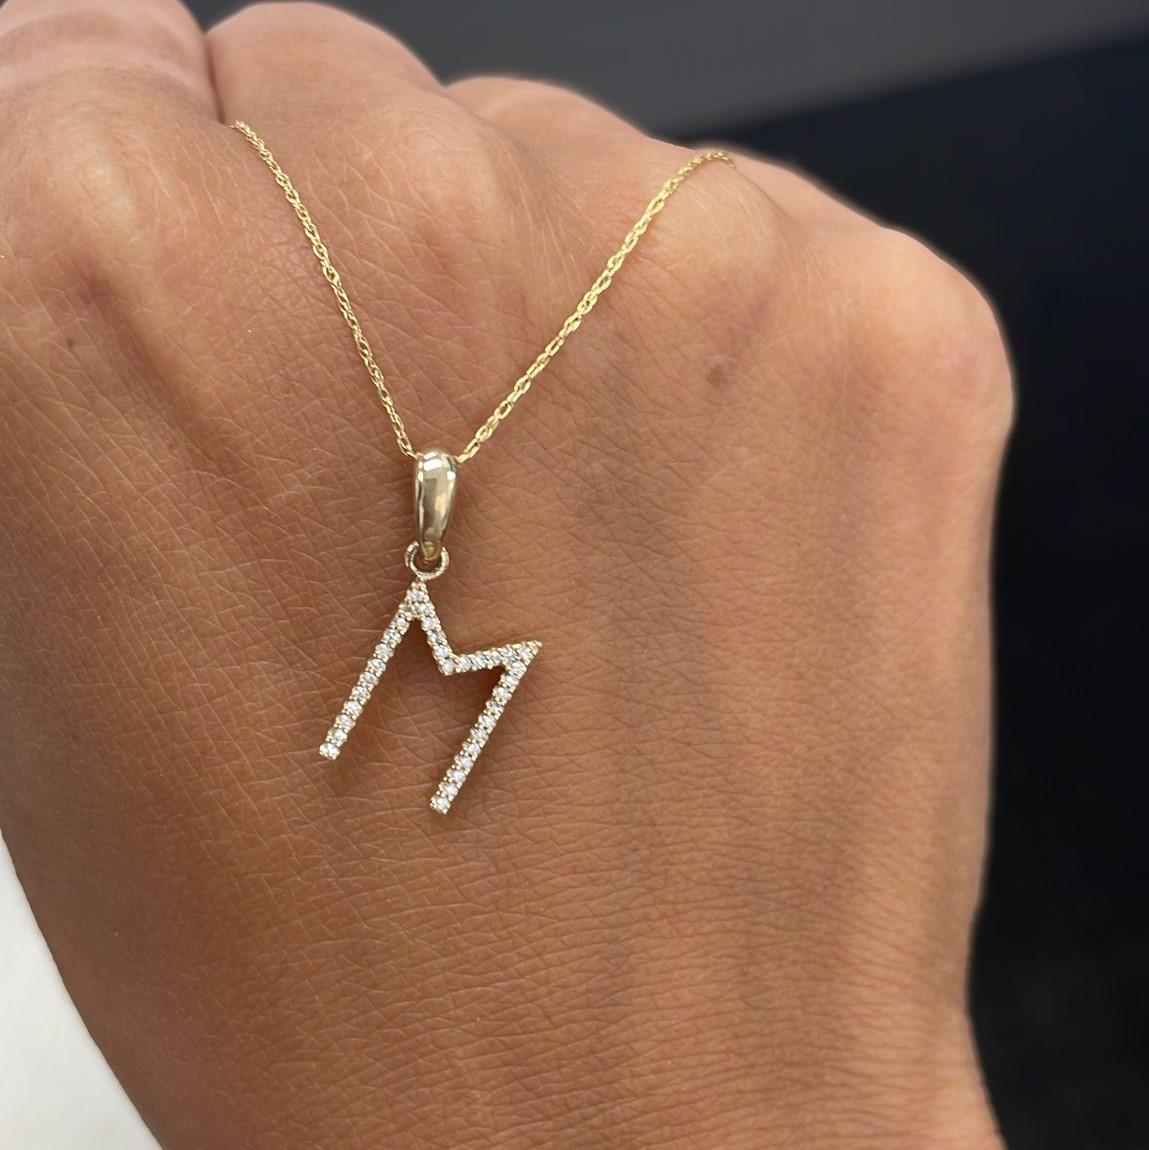 Collier à pendentif avec l'initiale de l'alphabet : Ce magnifique collier en or, d'une longueur de chaîne de 16 à 18 pouces et d'un diamètre d'initiale de 13 mm, est orné de diamants ronds de 0,09 à 0,12 ct, ce qui vous permet de mettre en valeur